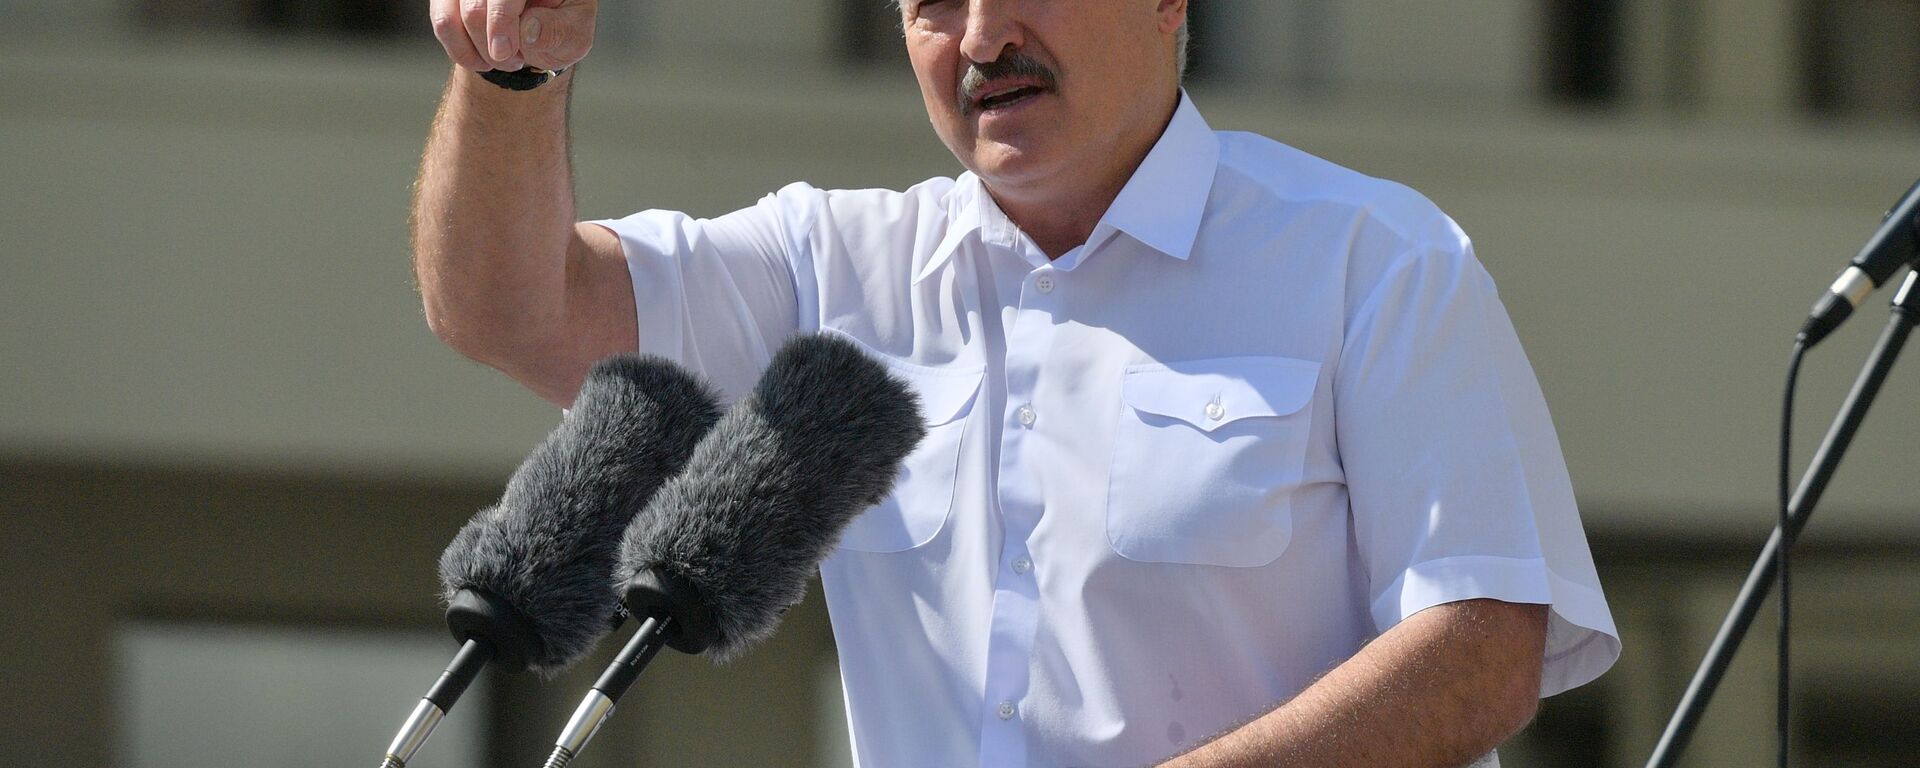 Prezident Belarusi Aleksandr Lukashenko vistupayet na mitinge v yego podderjku - Sputnik O‘zbekiston, 1920, 13.03.2021